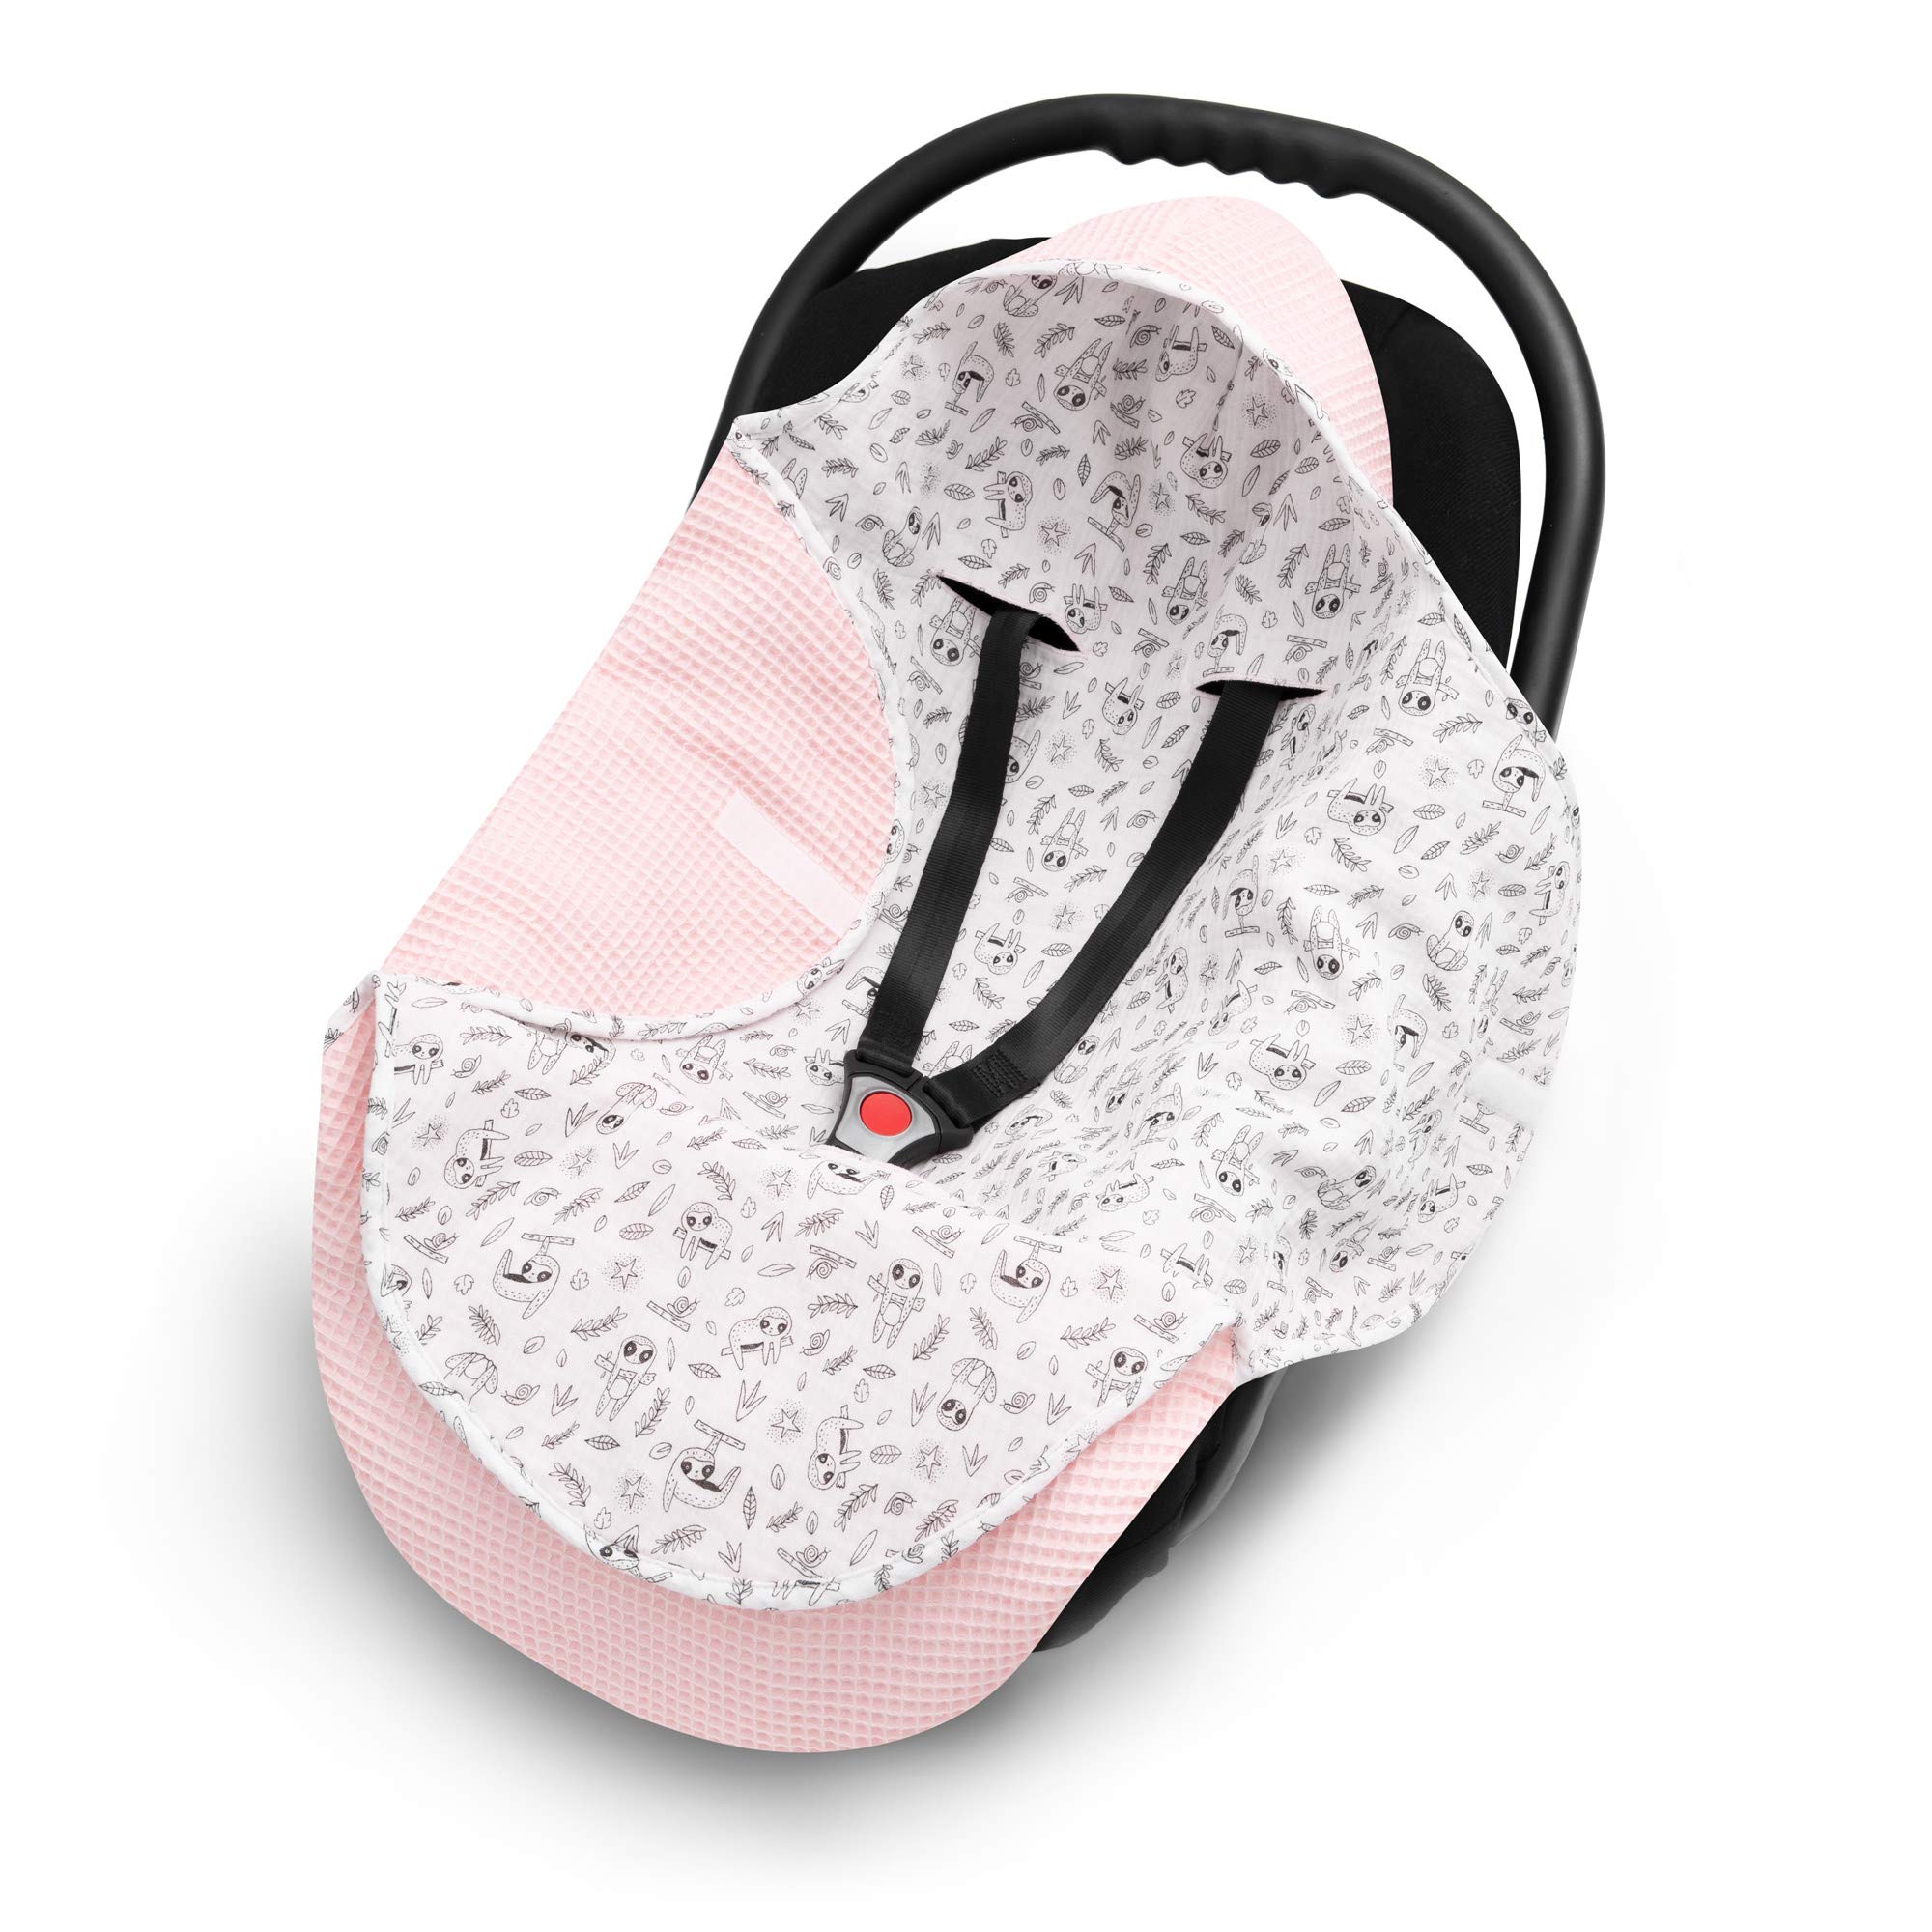 EliMeli Einschlagdecke für Babyschale 100% Baumwolle - Leichte Baby Decke für Autositz aus Waffelstoff und Musselin für den Sommer und Frühling, universal z.B. Maxi Cosi (Rosa - Faultier)